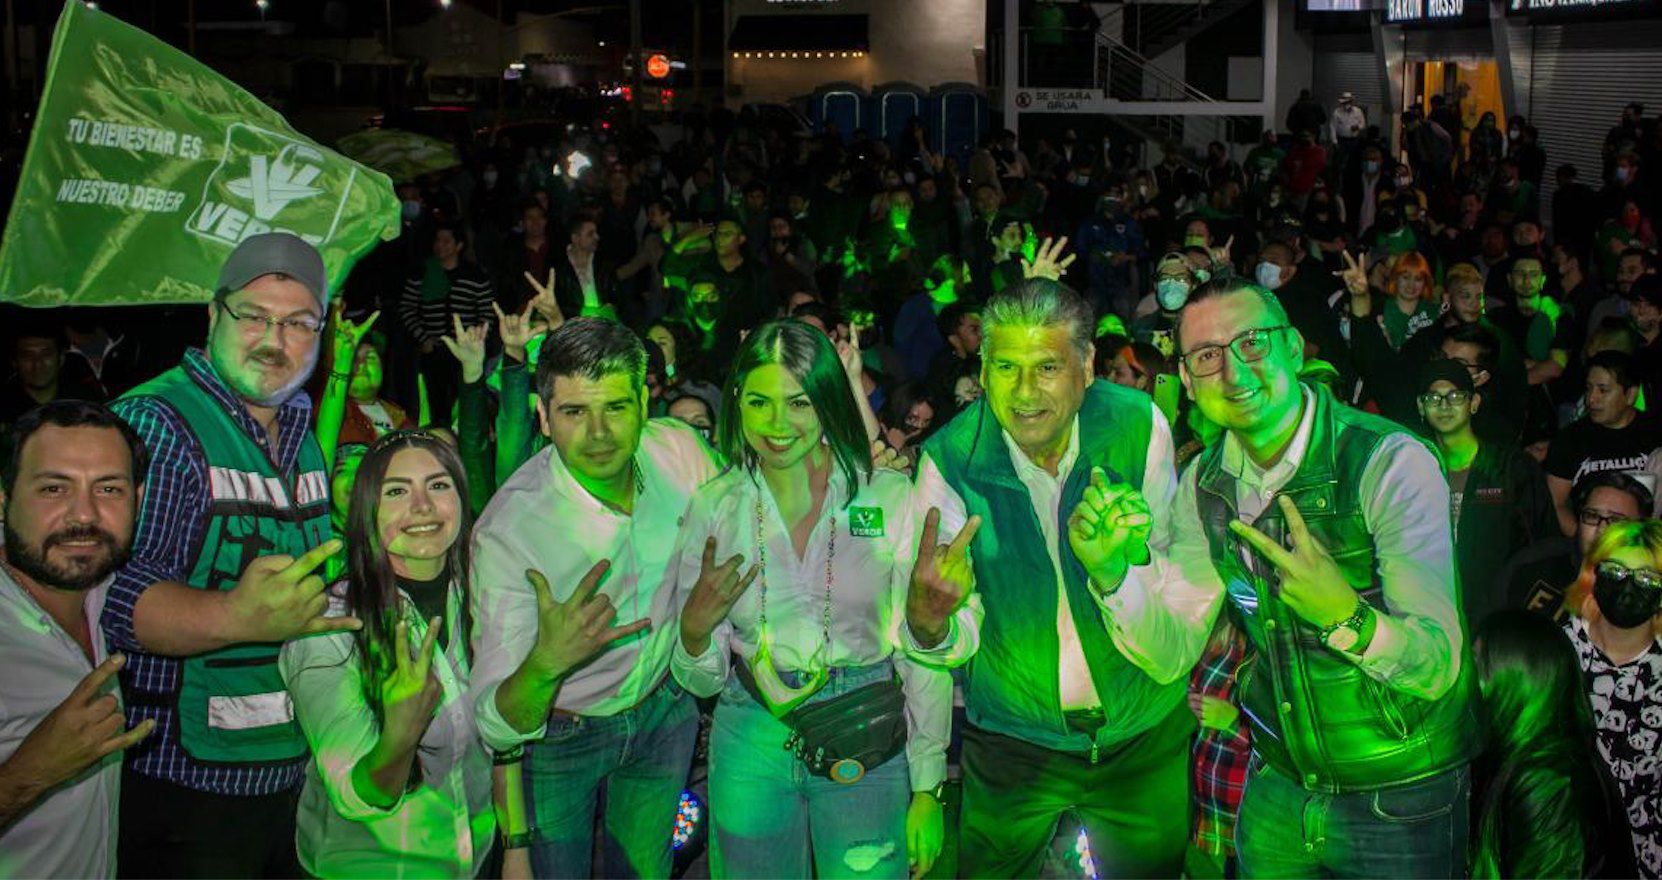 ¿Metallica en México? Candidato del PVEM promete traerlos ‘gratis’ si gana la presidencia municipal de Reynosa